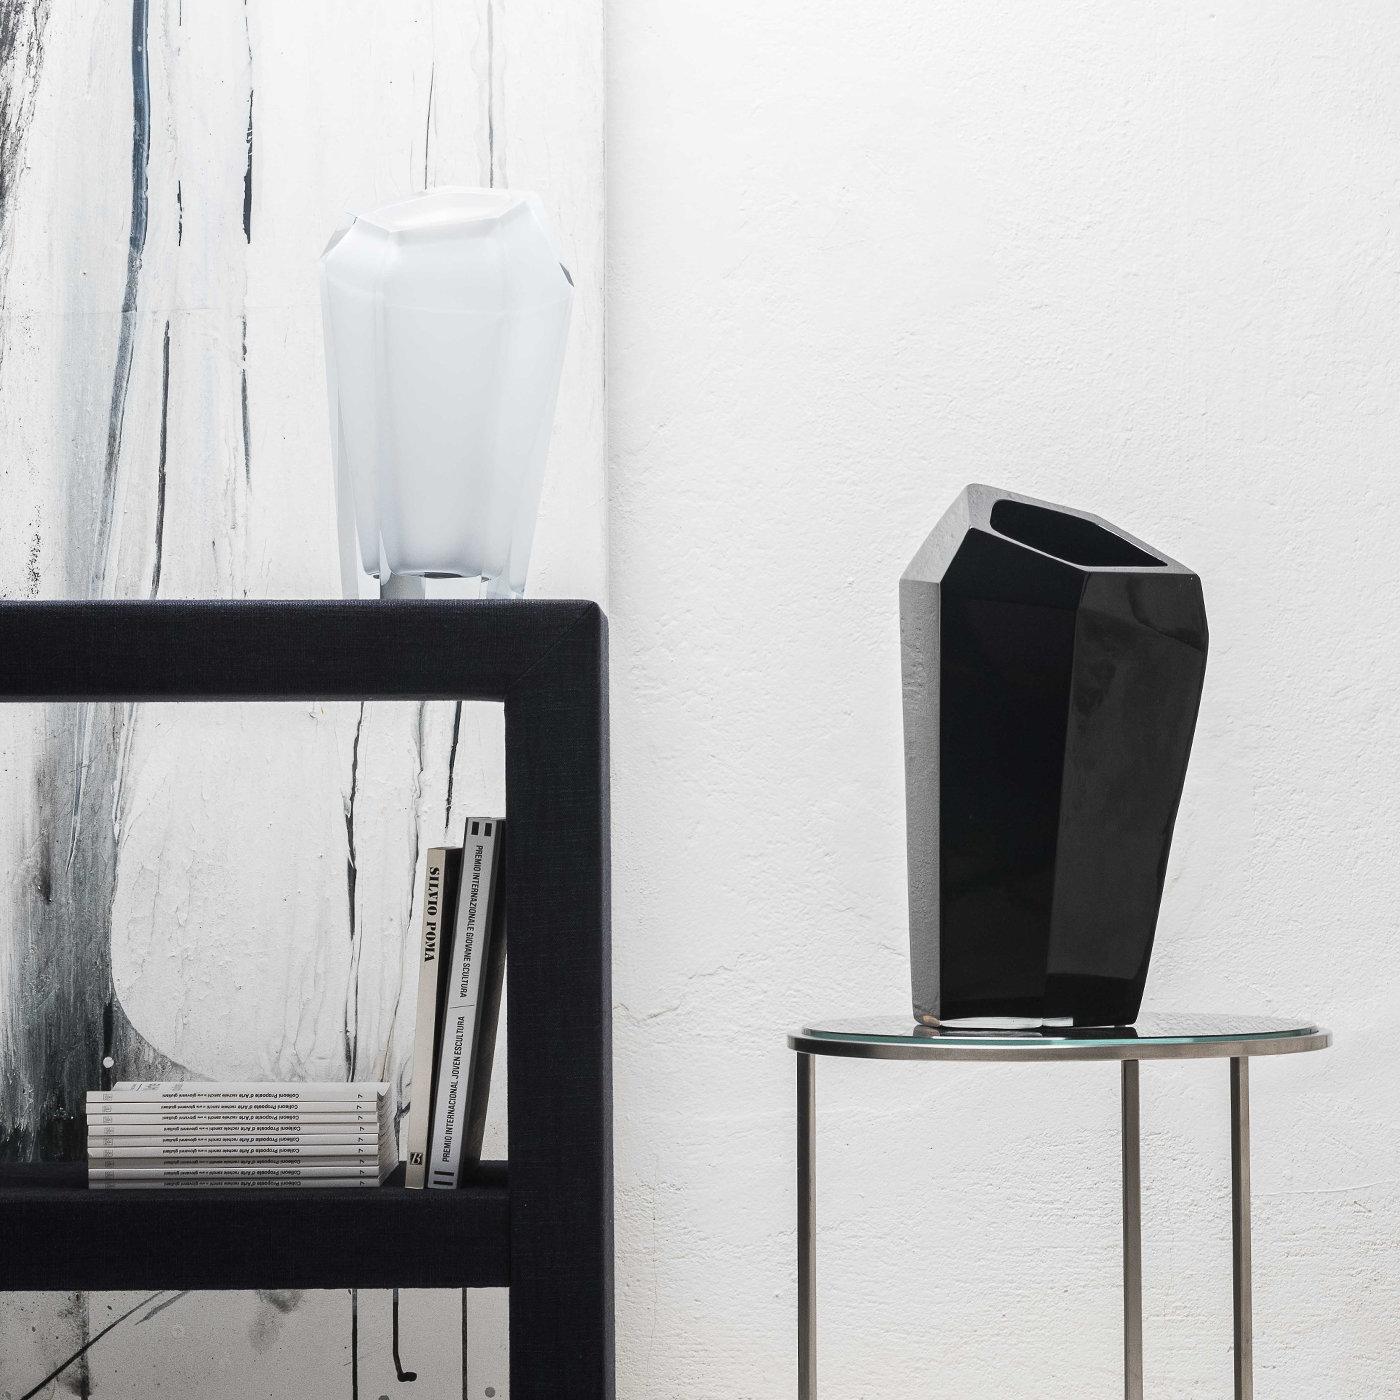 Conçu par Karim Rashid, ce vase extra-large fait partie d'une série de récipients de formes et de tailles différentes, qui se distinguent par leurs silhouettes à multiples facettes qui reflètent la lumière environnante de manière saisissante et